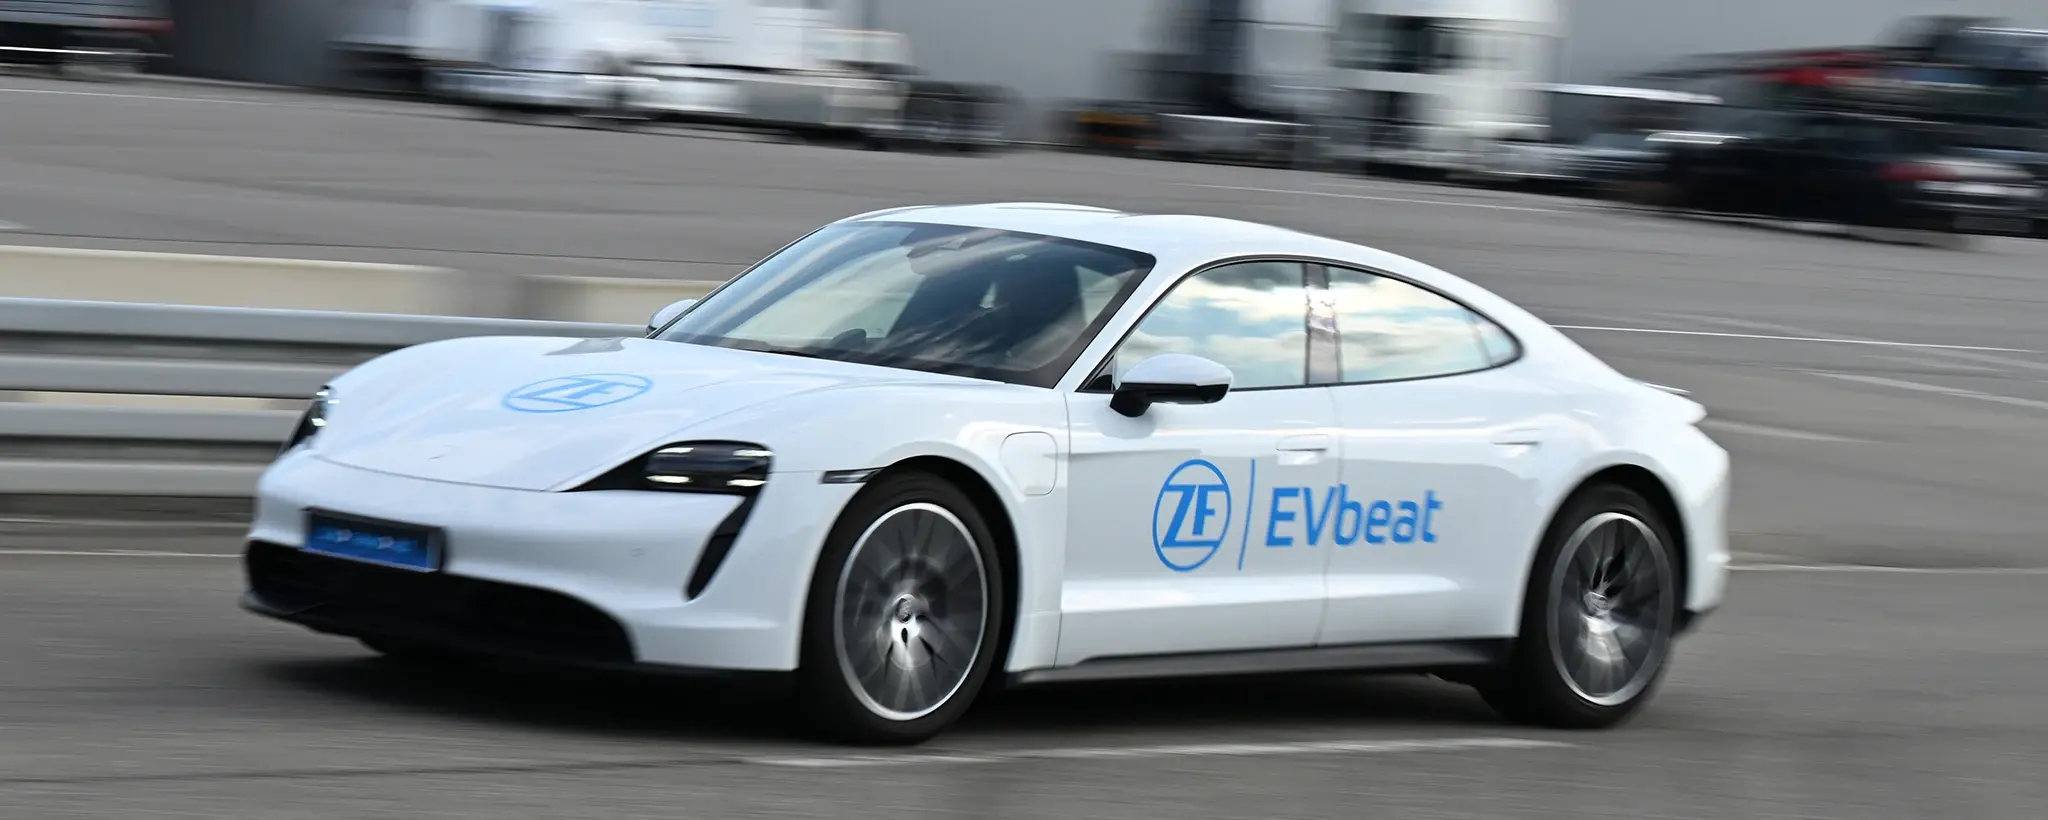 Im elektrischen Konzeptfahrzeug „EVbeat“ kombiniert ZF neu entwickelte Komponenten zu einem hocheffizienten und kompakten Gesamtsystem. Gleichzeitig erfüllt die E-Antriebstechnik der nächsten Generation den Nachhaltigkeitsanspruch des Konzerns.